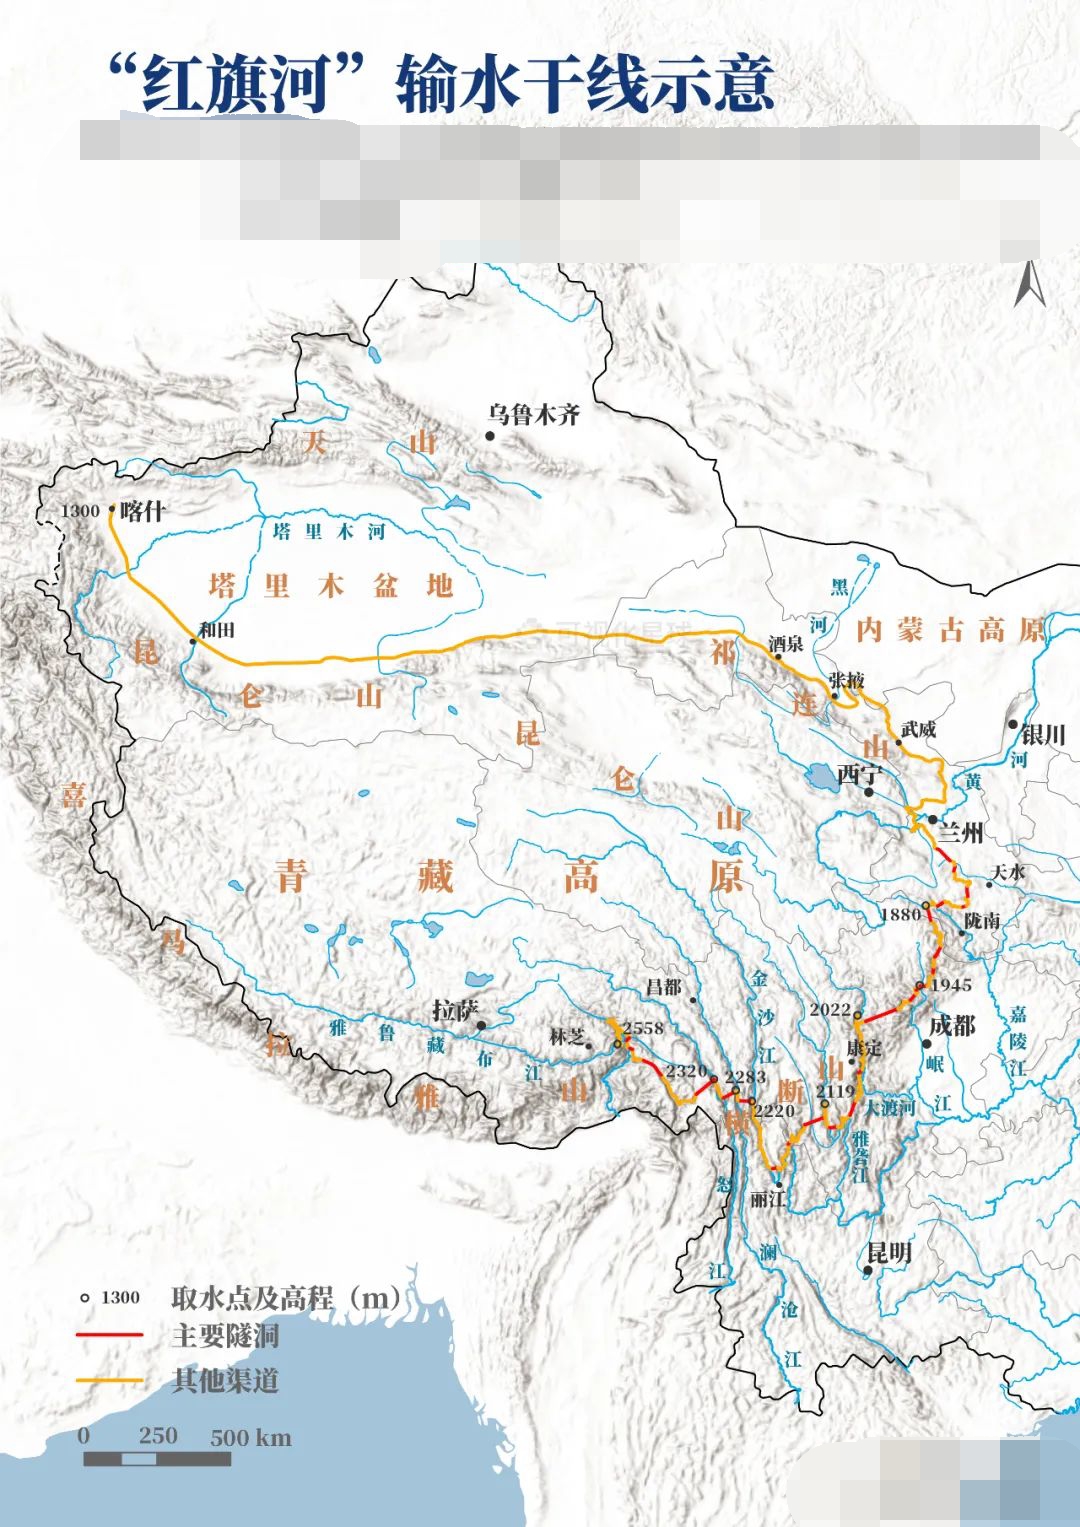 额尔齐斯河为鄂毕河最大的支流,流经中国,哈萨克斯坦,俄罗斯的国际